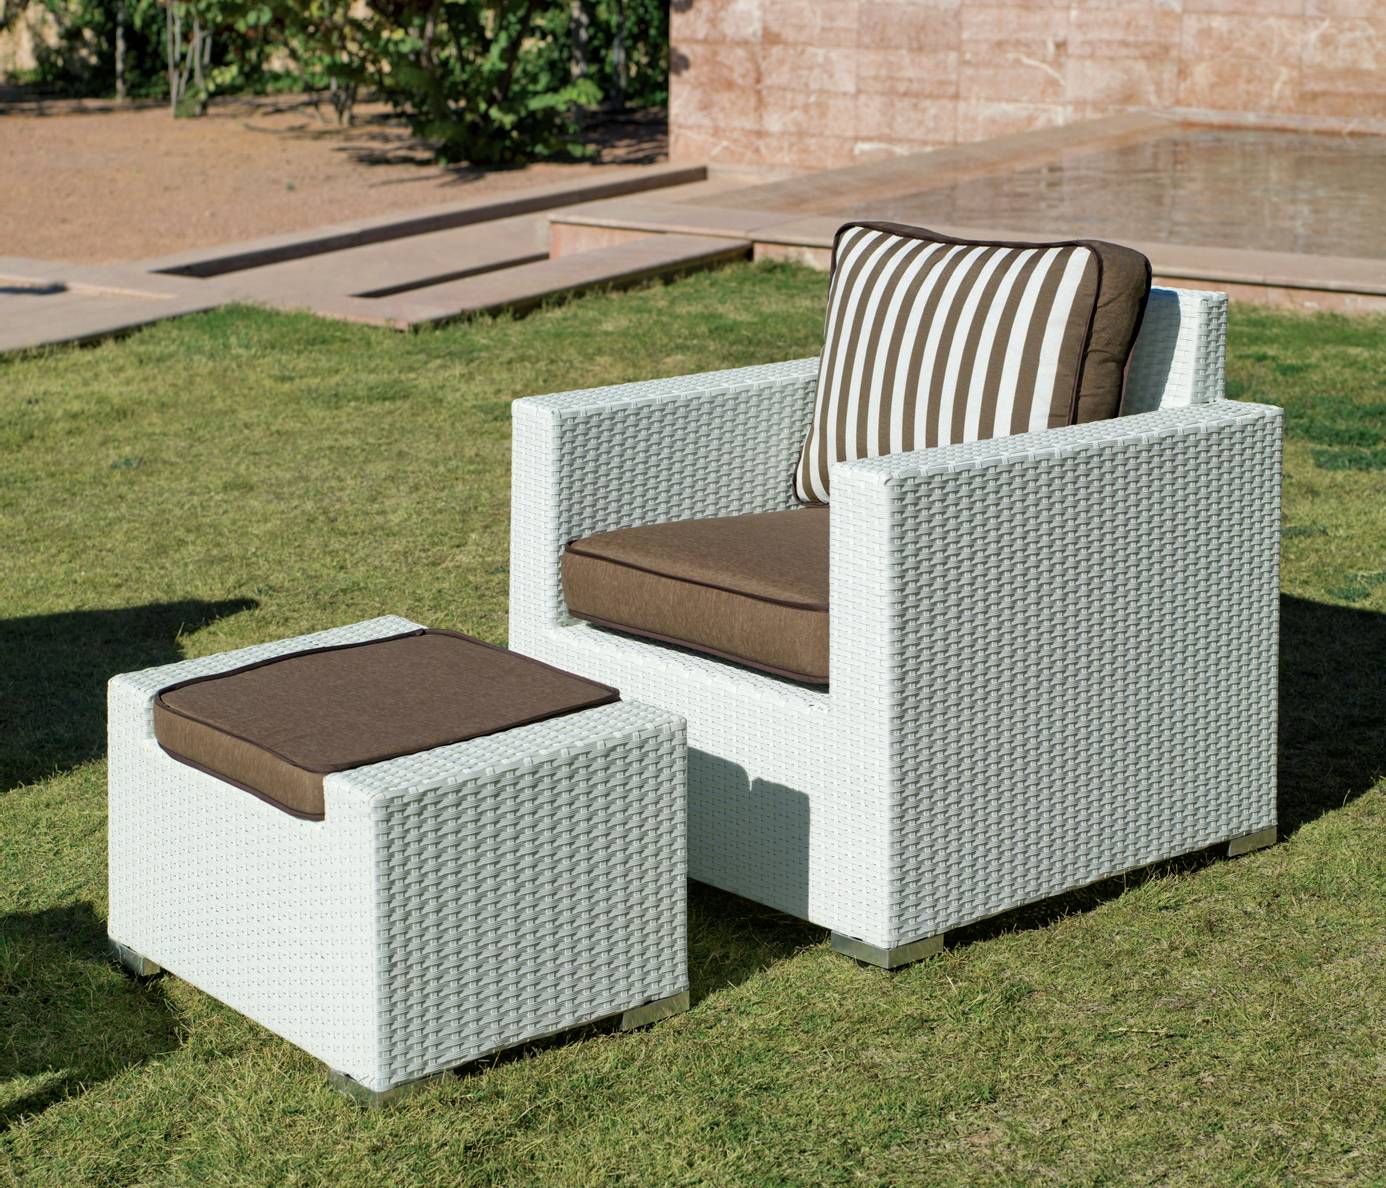 Conjunto Ratán Sint. Tuscan-8 - Conjunto de ratán sintético color blanco: sofá 3 plazas + 2 sillones confort + mesa de centro